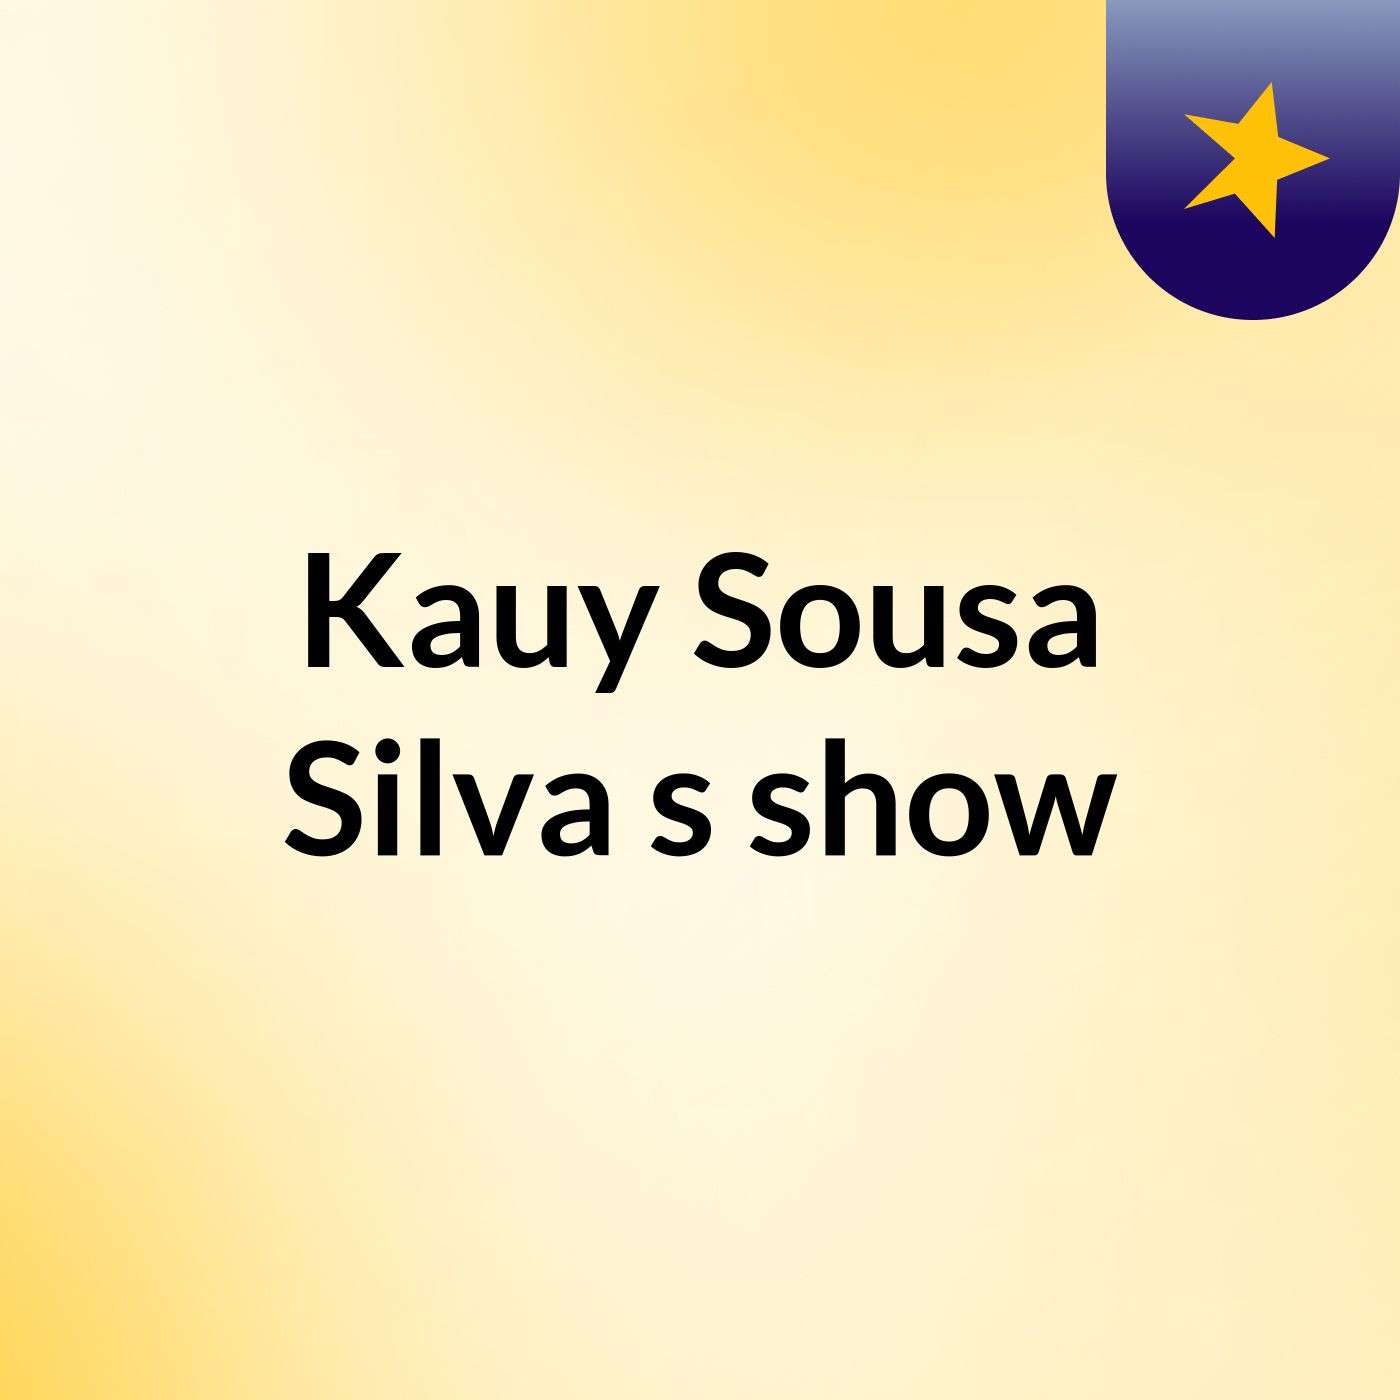 Kauy Sousa Silva's show